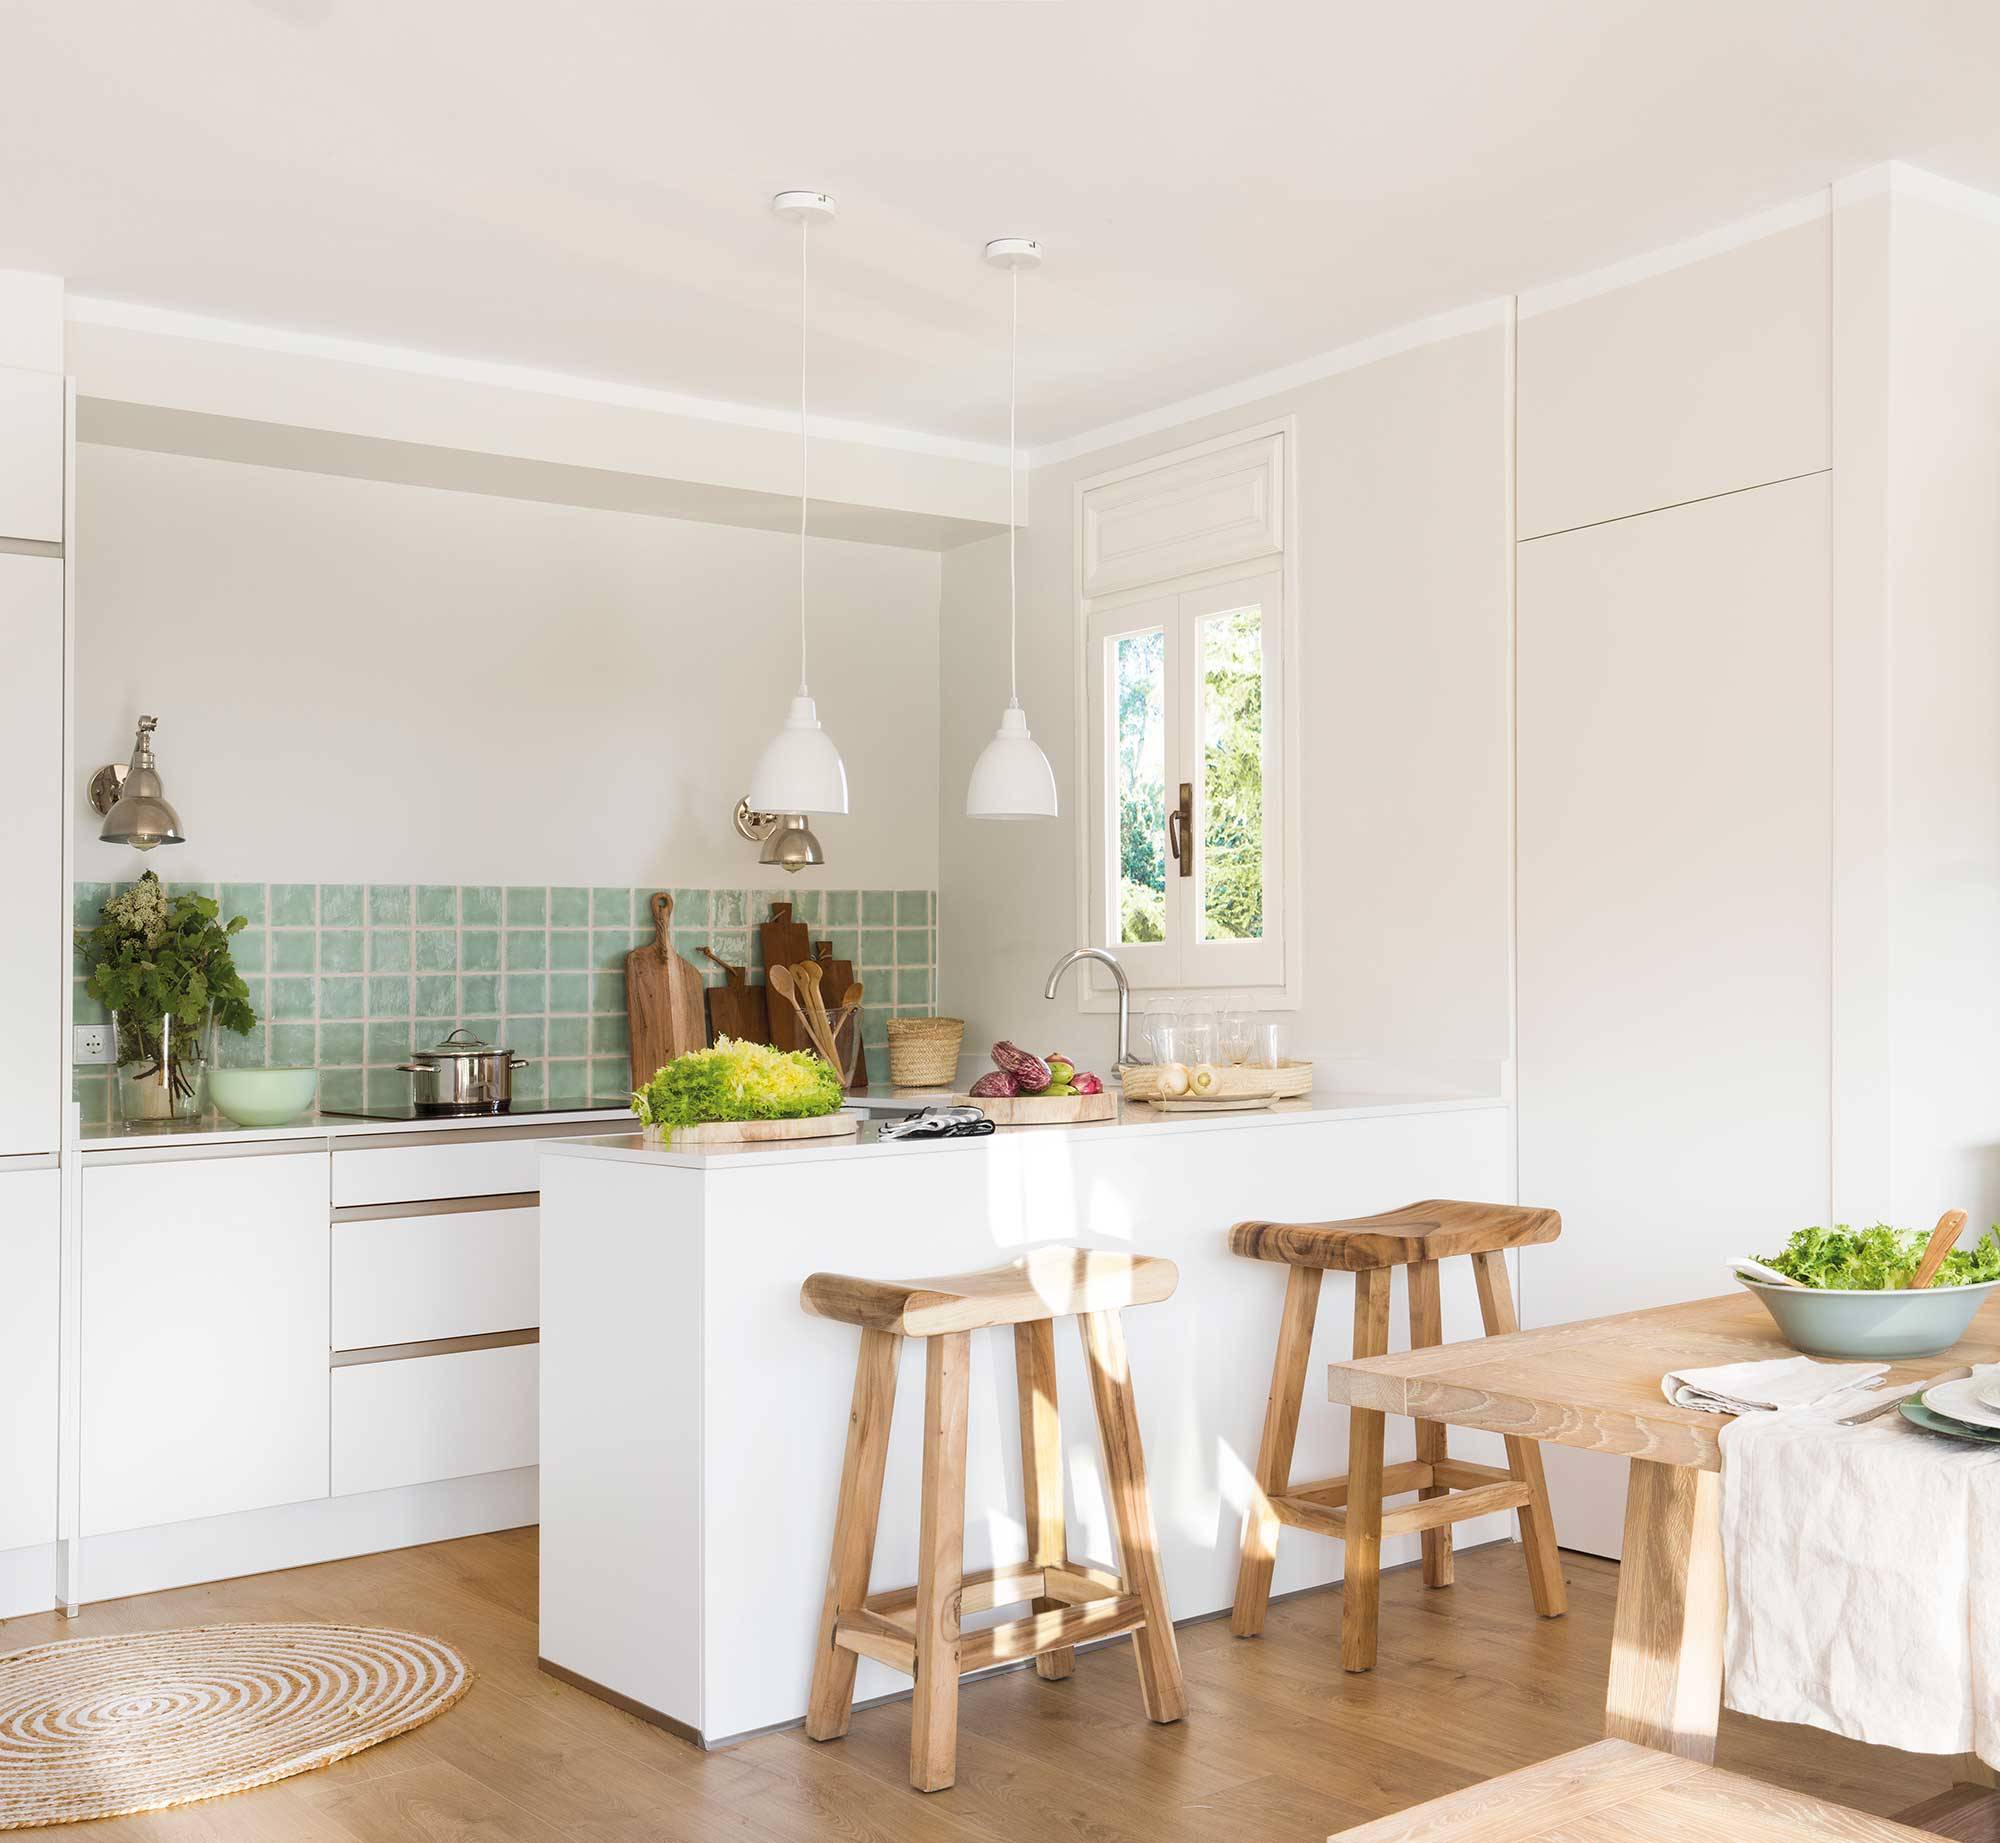 Cocina moderna blanca con antepecho de azulejos verdes. 